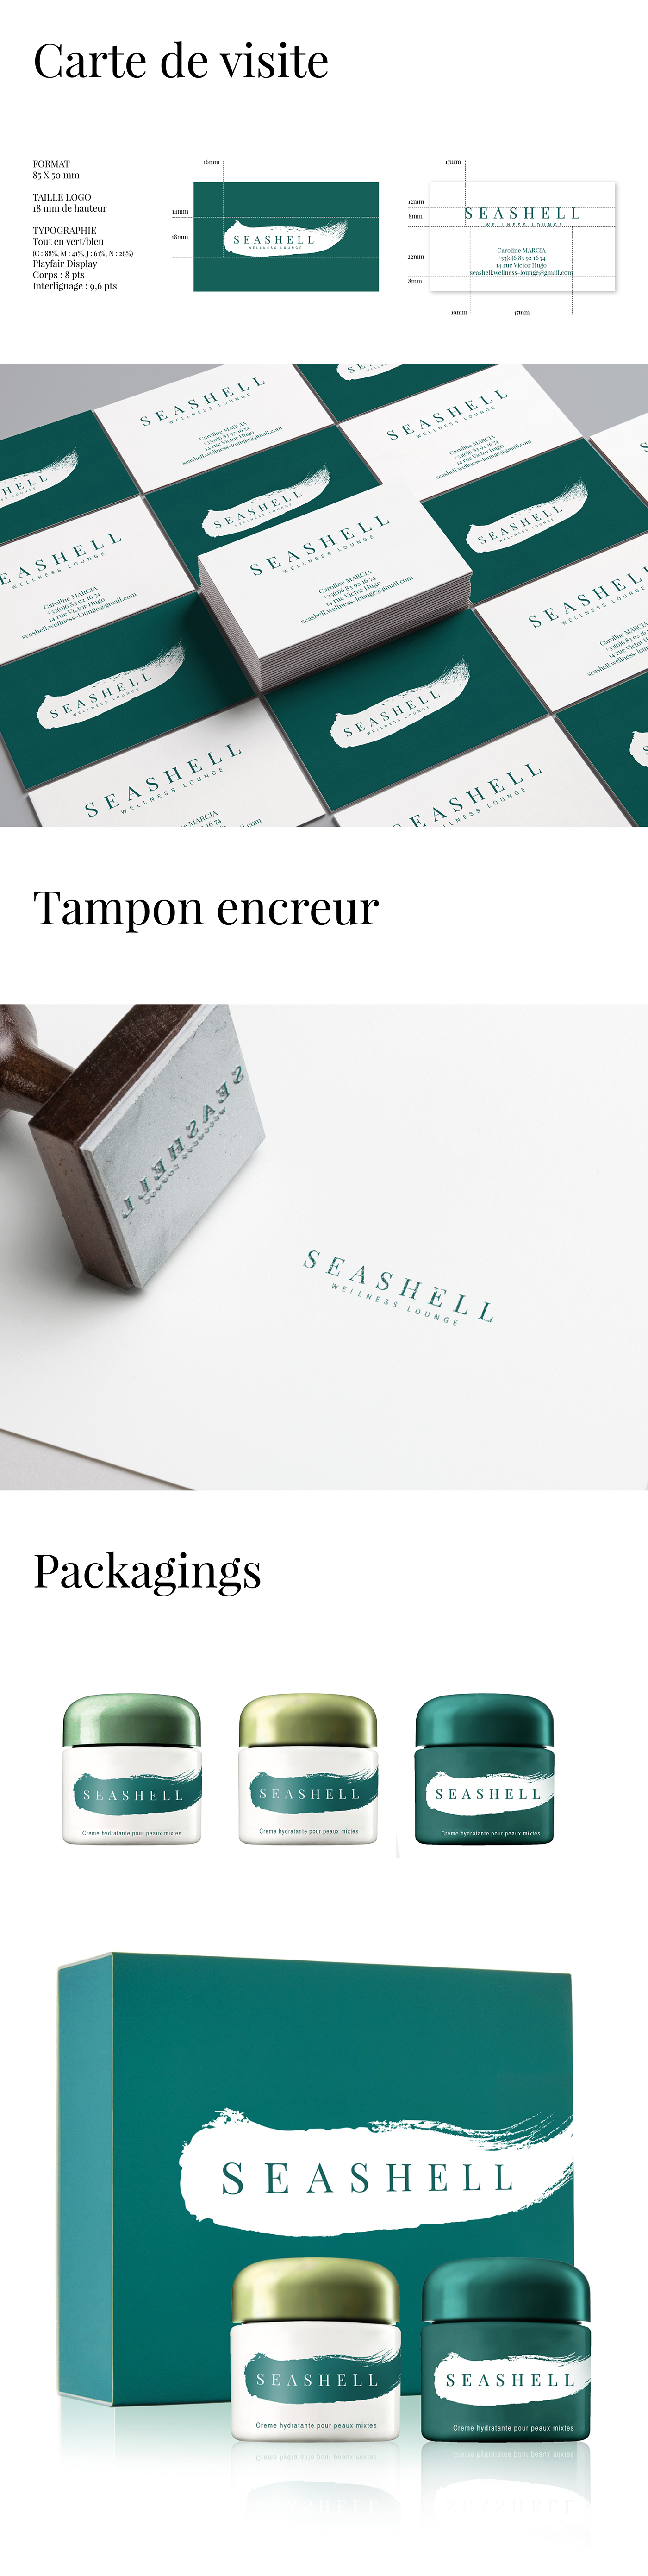 identité visuelle cosmetique charte graphique packagings marque logo carte de visite tampon encreur